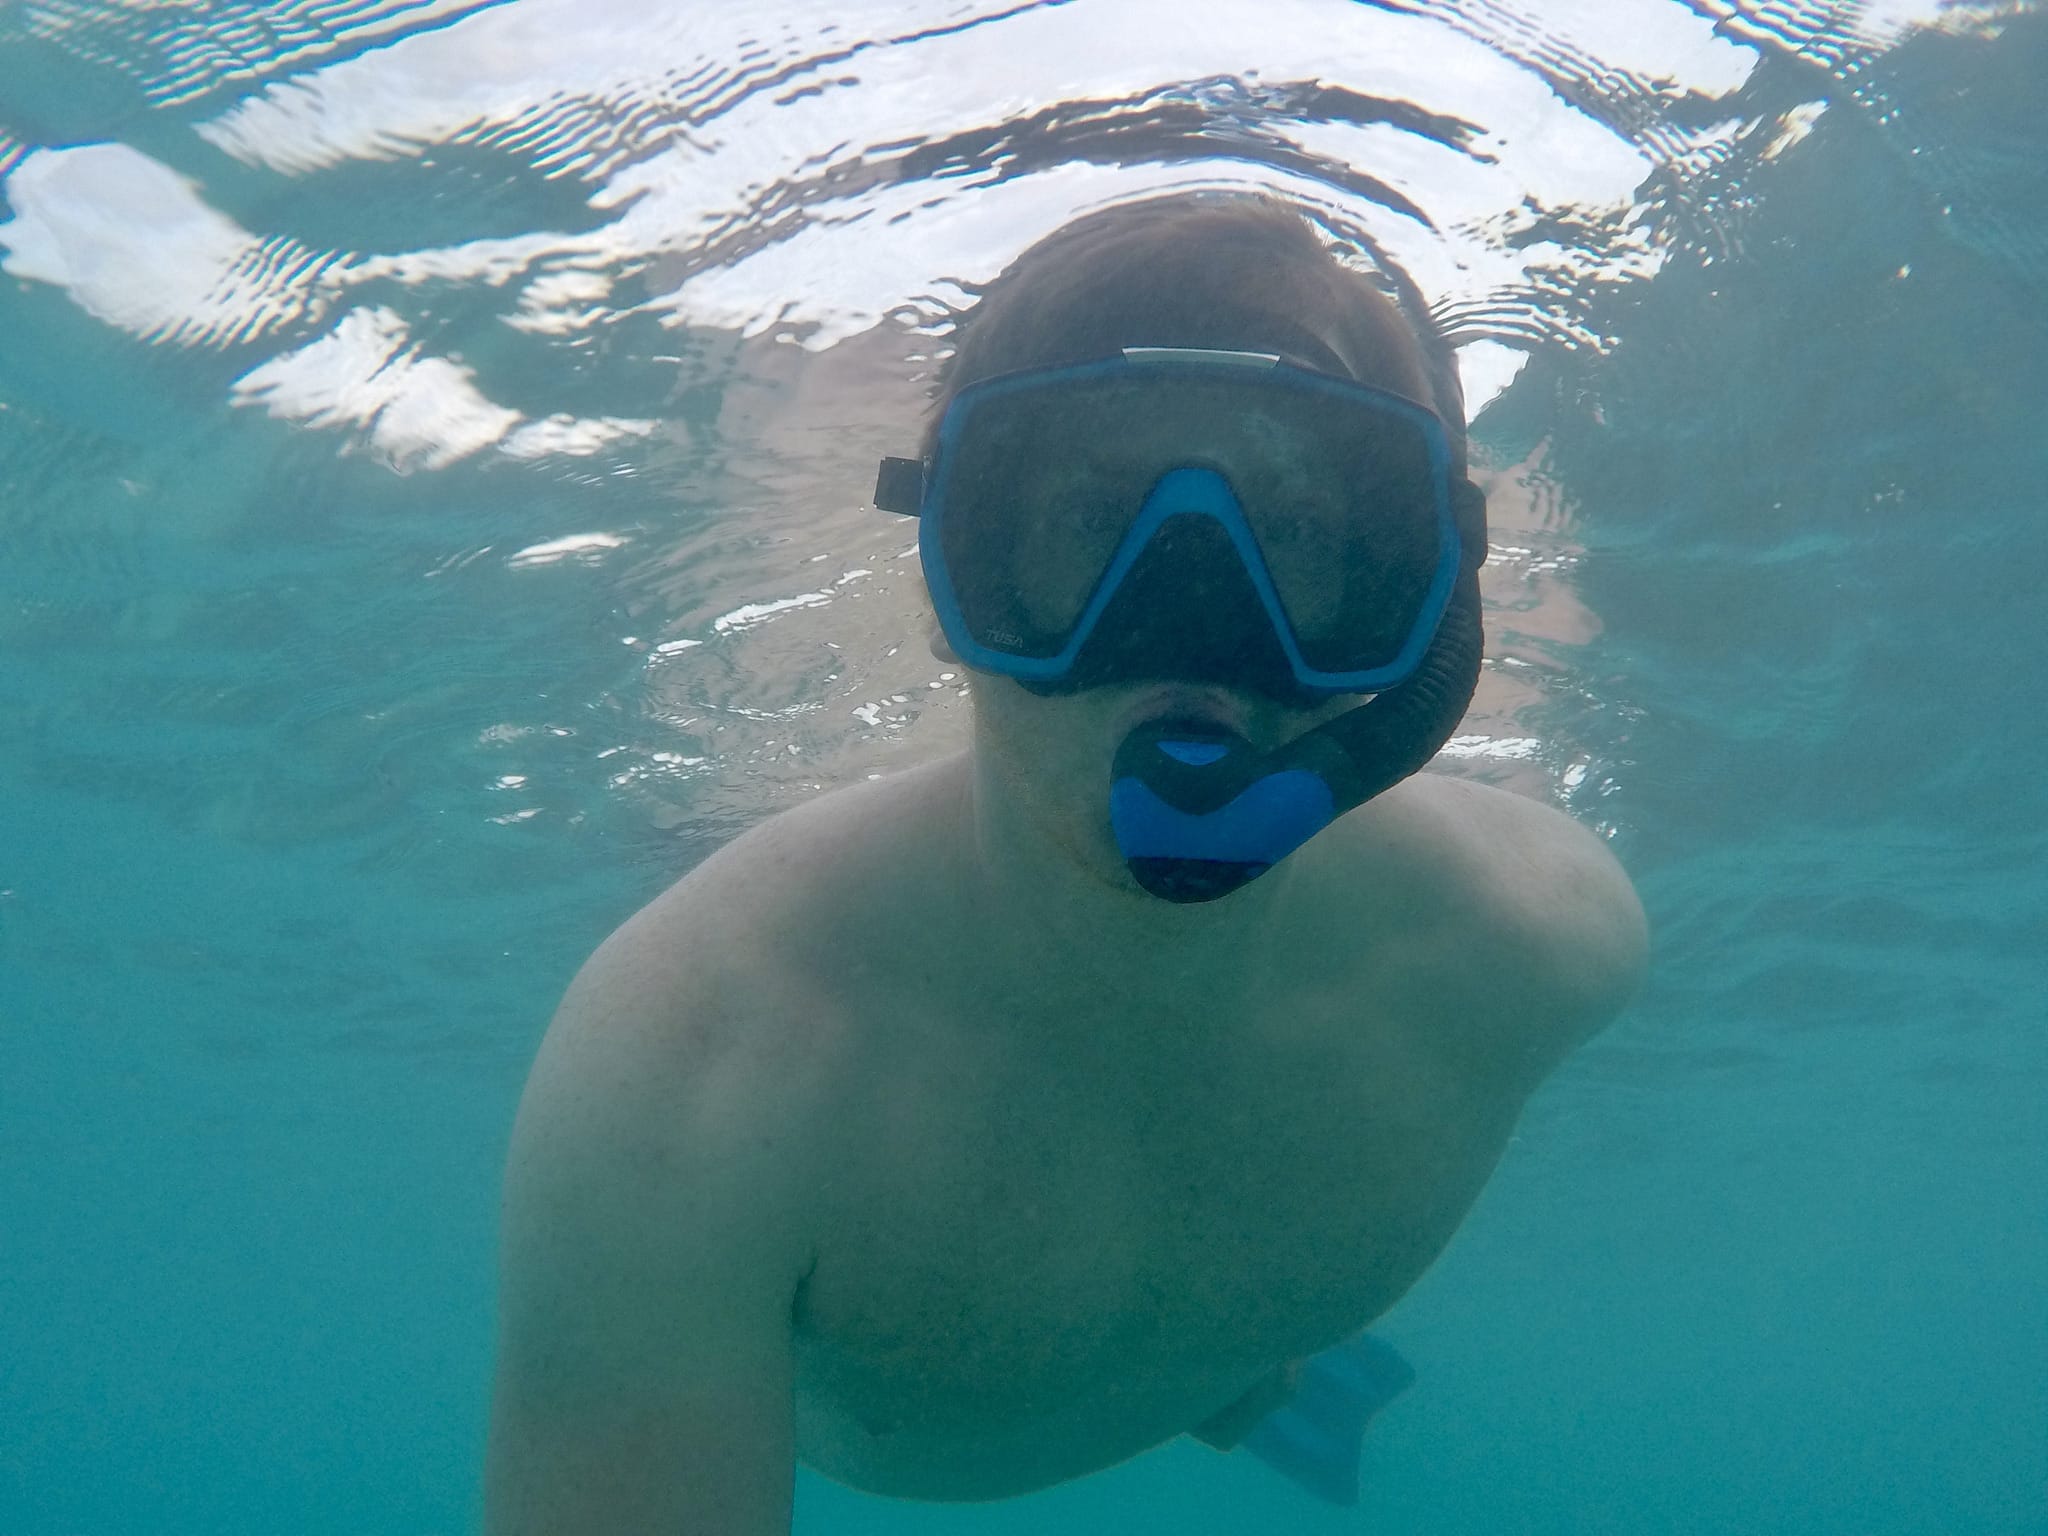 Vous pouvez barboter pendant des heures dans le lagon de Coco Bodu Hithi - parfois en éclaboussant, parfois en nageant, parfois en faisant de la plongée en apnée. Carnet de voyage Expériences Coco Bodu Hithi Maldives